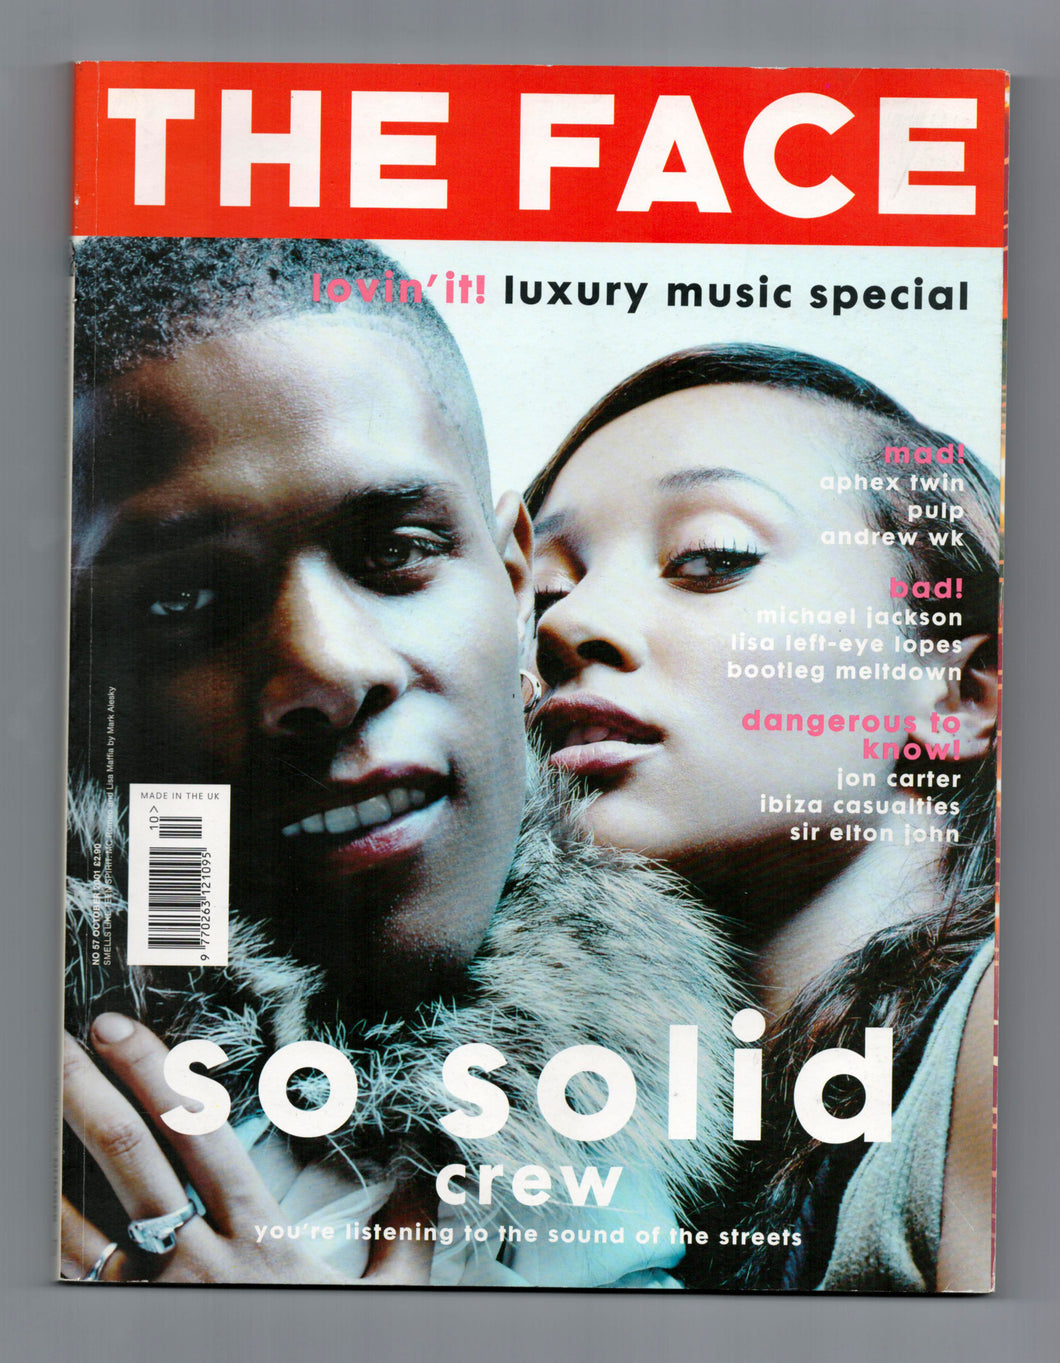 The Face Vol 3 No 57 Oct 2001